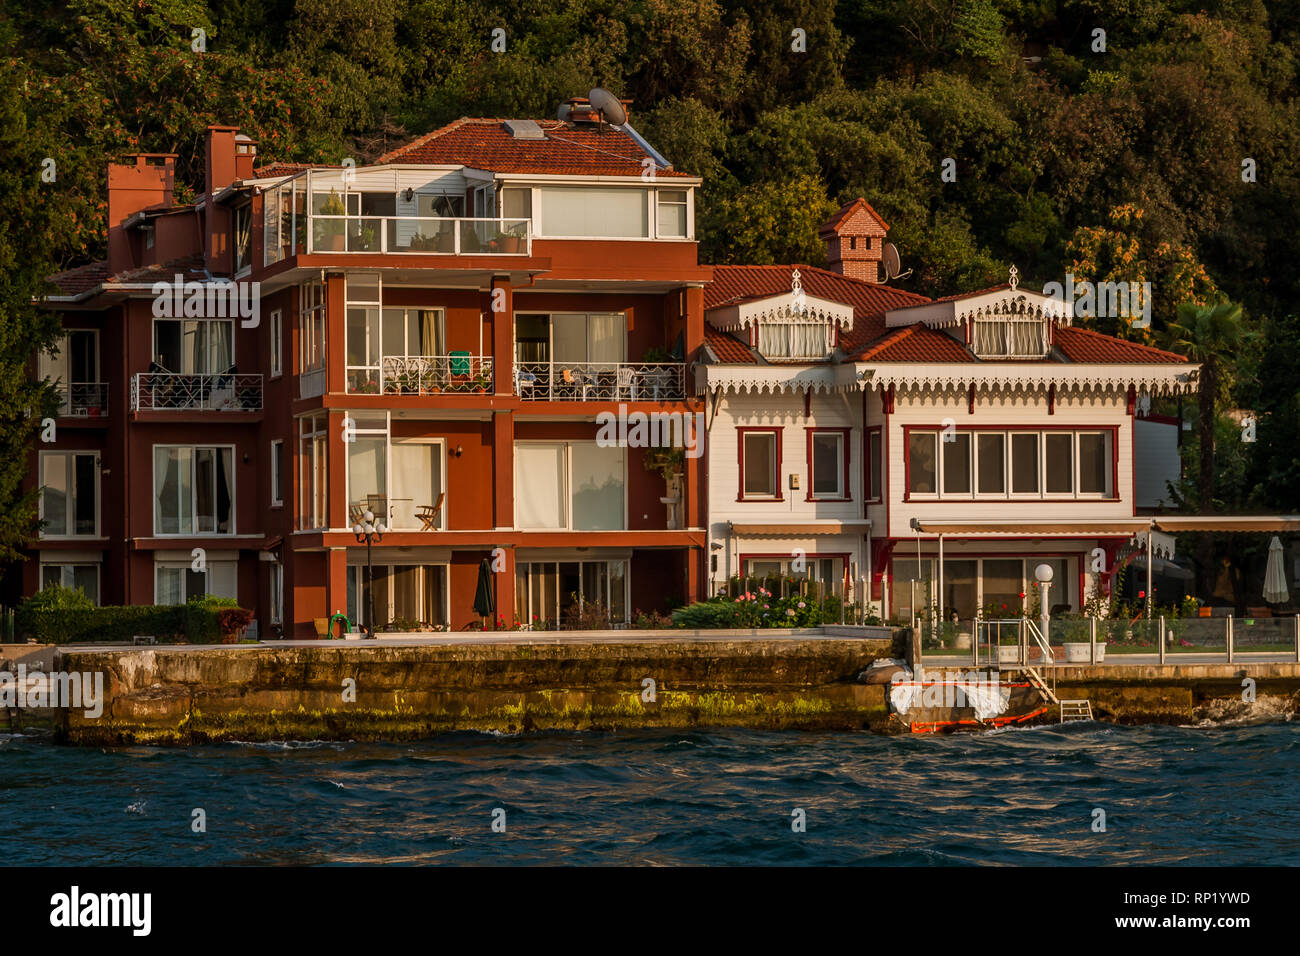 Era otomana villas y edificios de poca altura, en la costa asiática del estrecho del Bósforo, Estambul Foto de stock